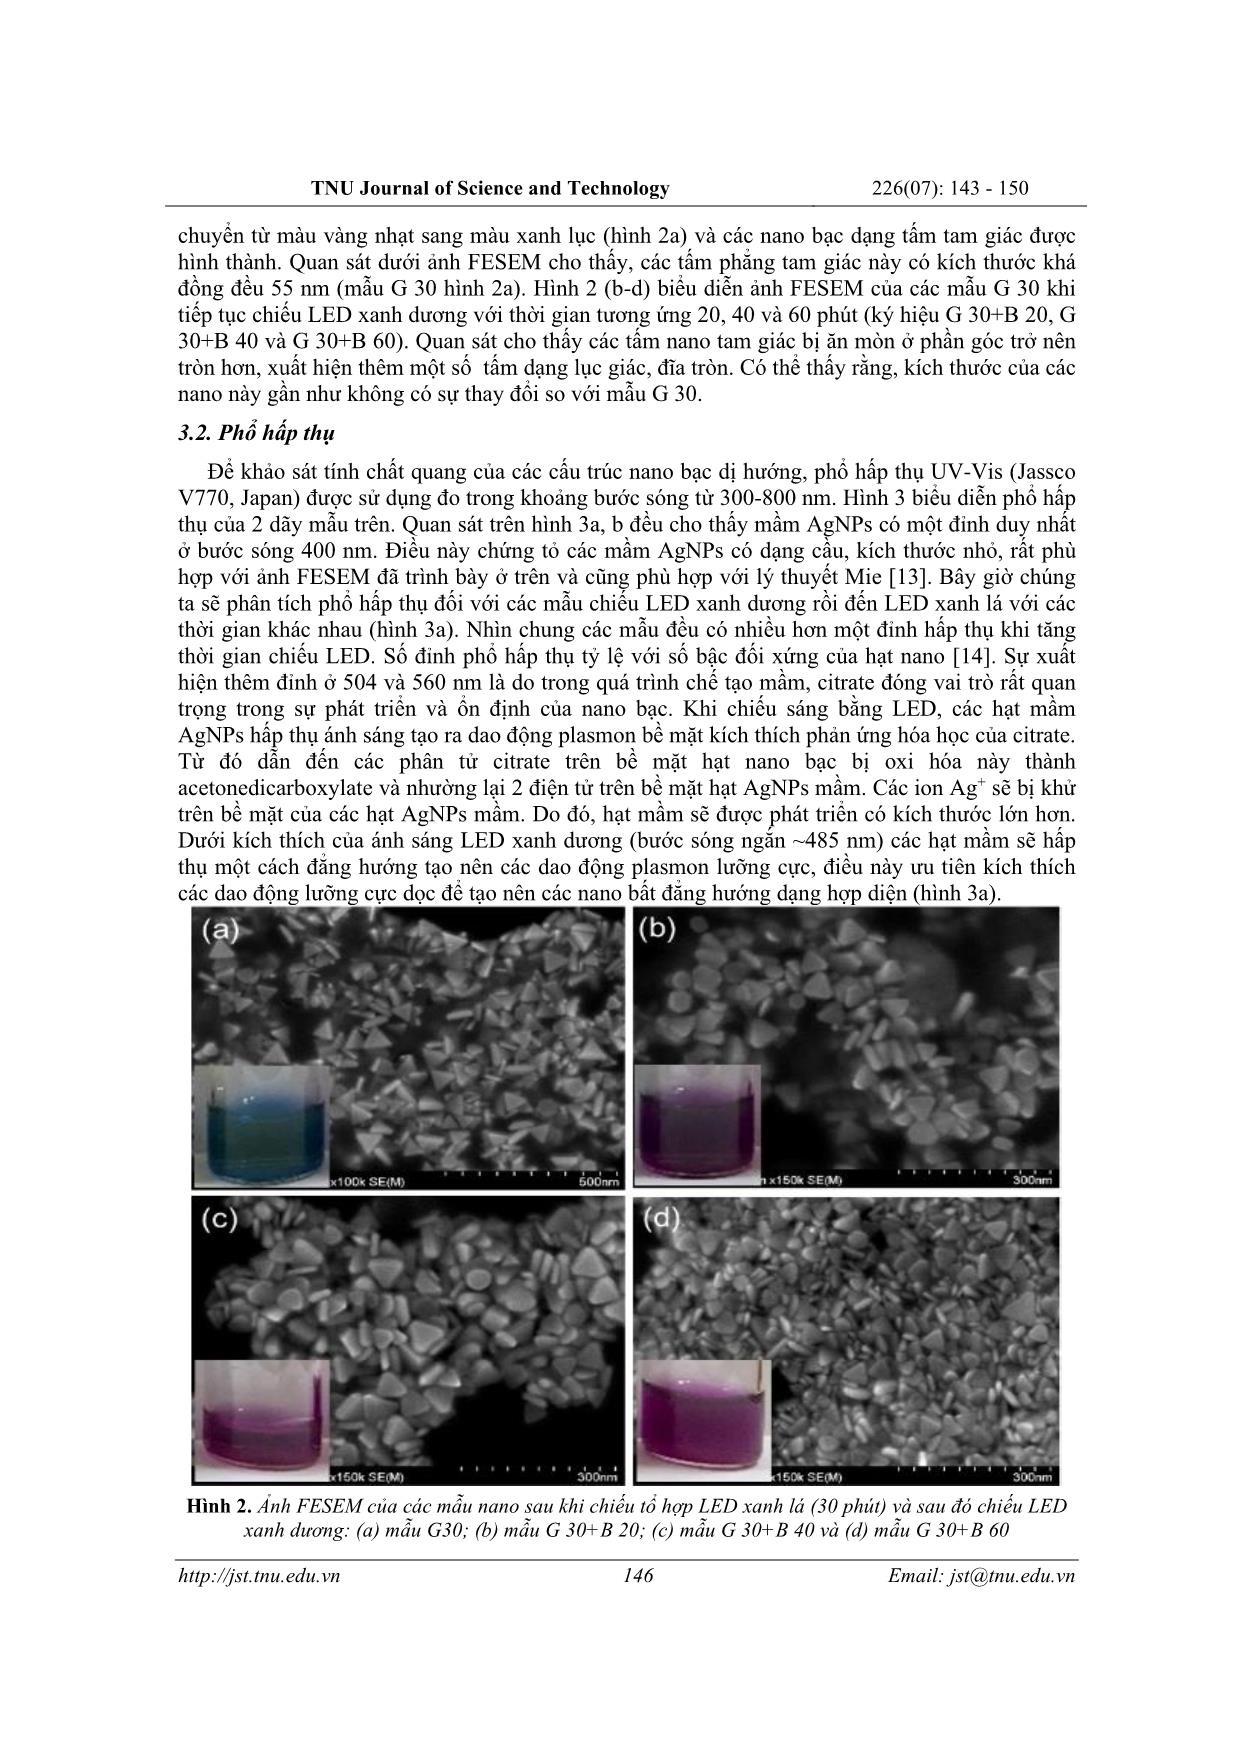 Chế tạo các nano bạc dị hướng bằng kích thích tổ hợp LED xanh lá và LED xanh dương cho ứng dụng phát hiện melamin trang 4